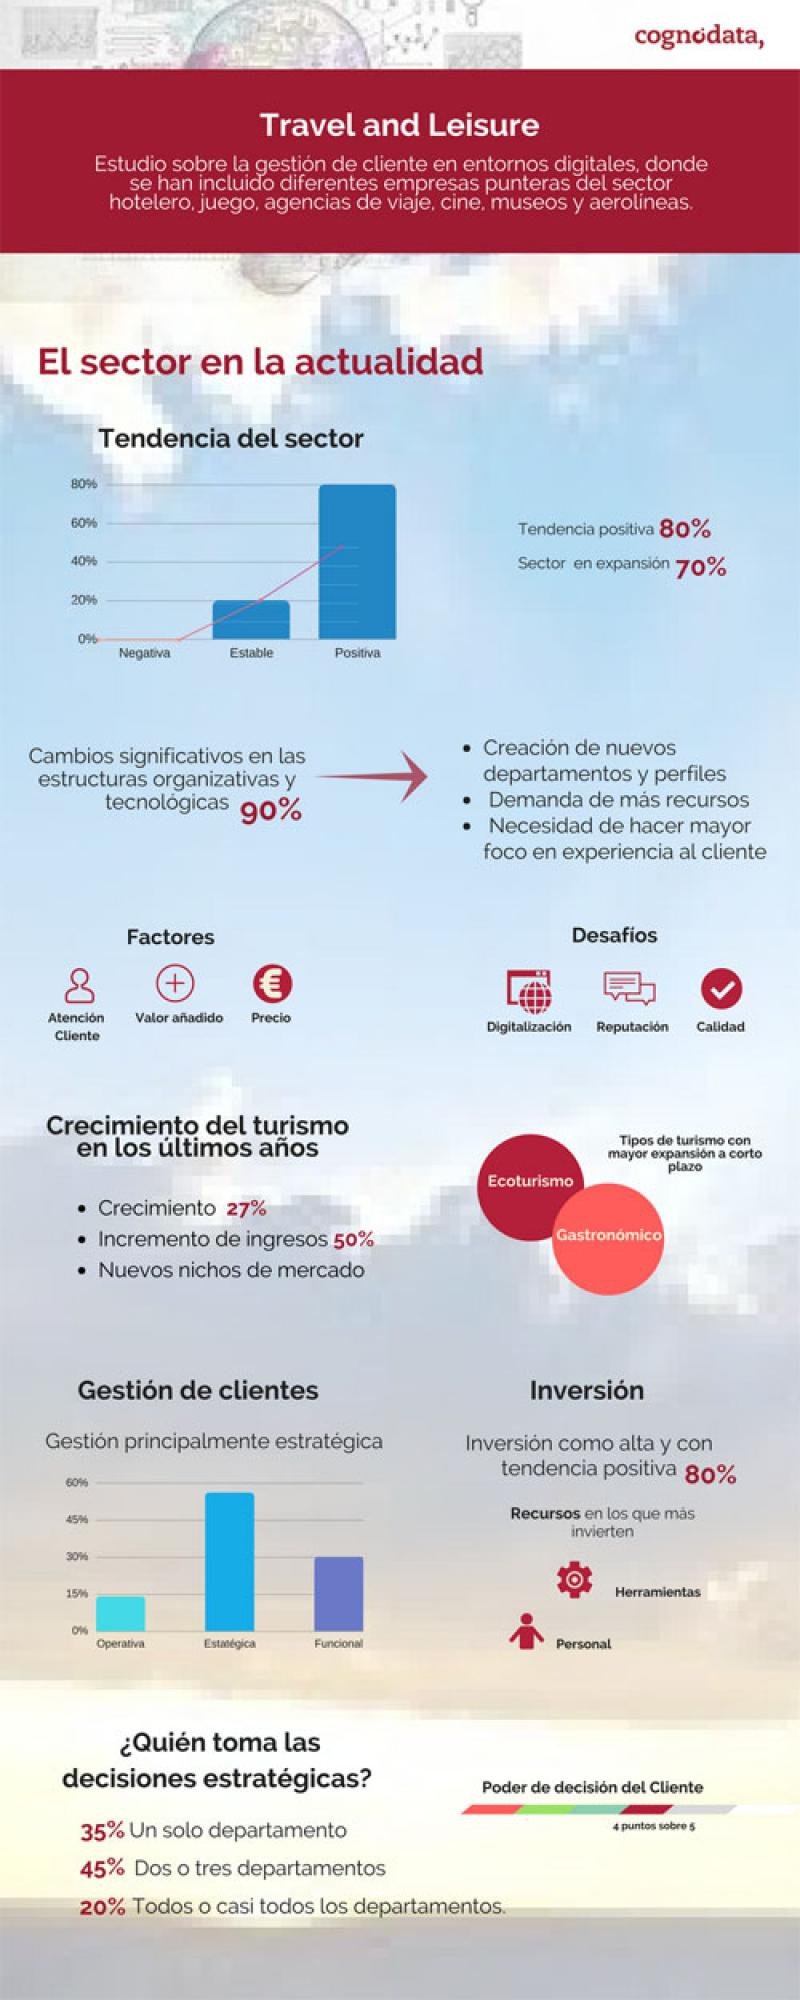 Infografía de Cognodata que ilustra la situación actual del sector turístico en el proceso de digitalización.